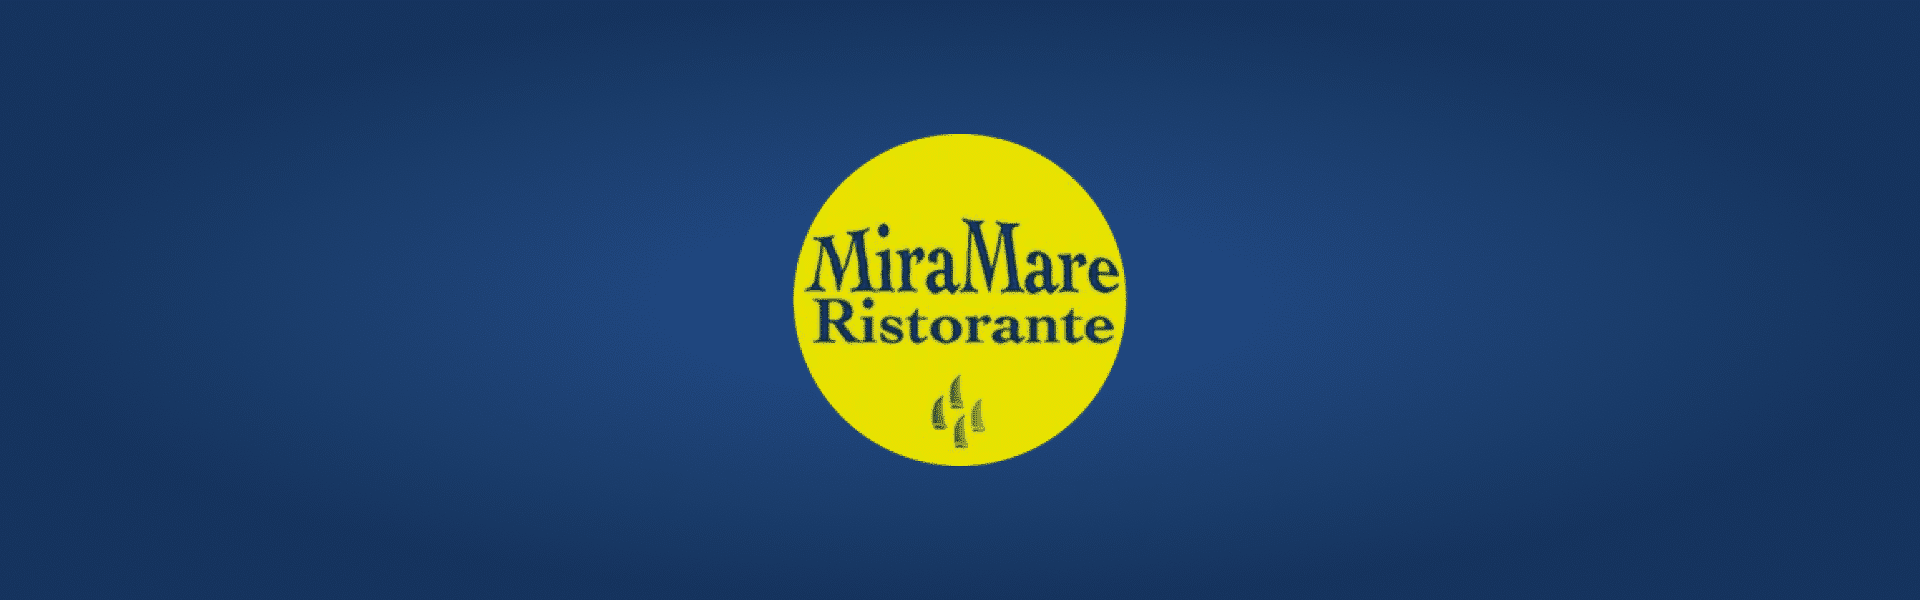 Stromboli MiraMare Ristorante